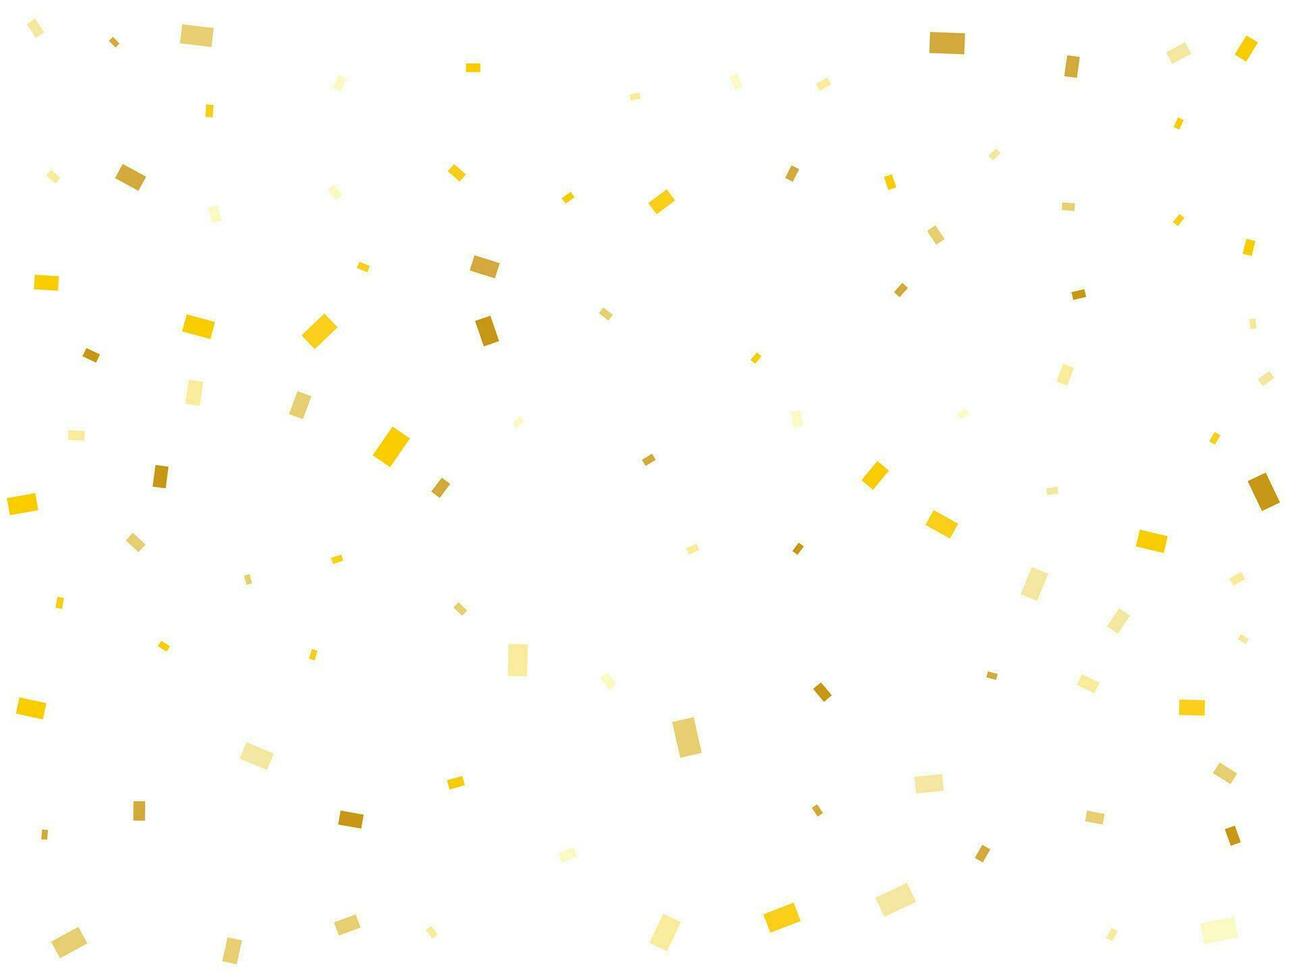 luz dourado retângulos. confete celebração, queda dourado abstrato decoração para Festa. vetor ilustração